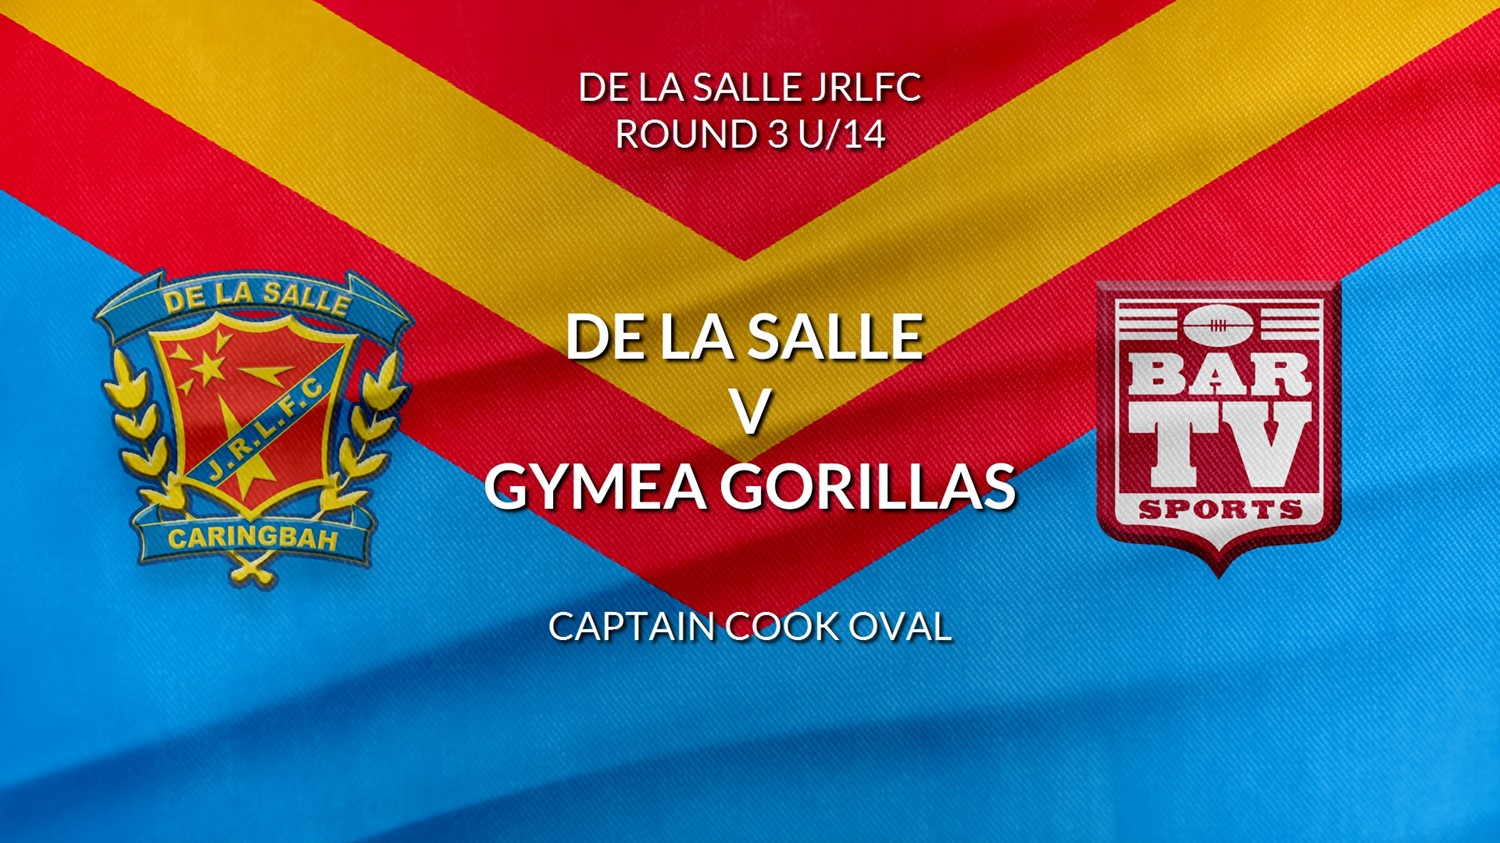 De La Salle Round 3 U/14 - De La Salle v Gymea Gorillas Slate Image